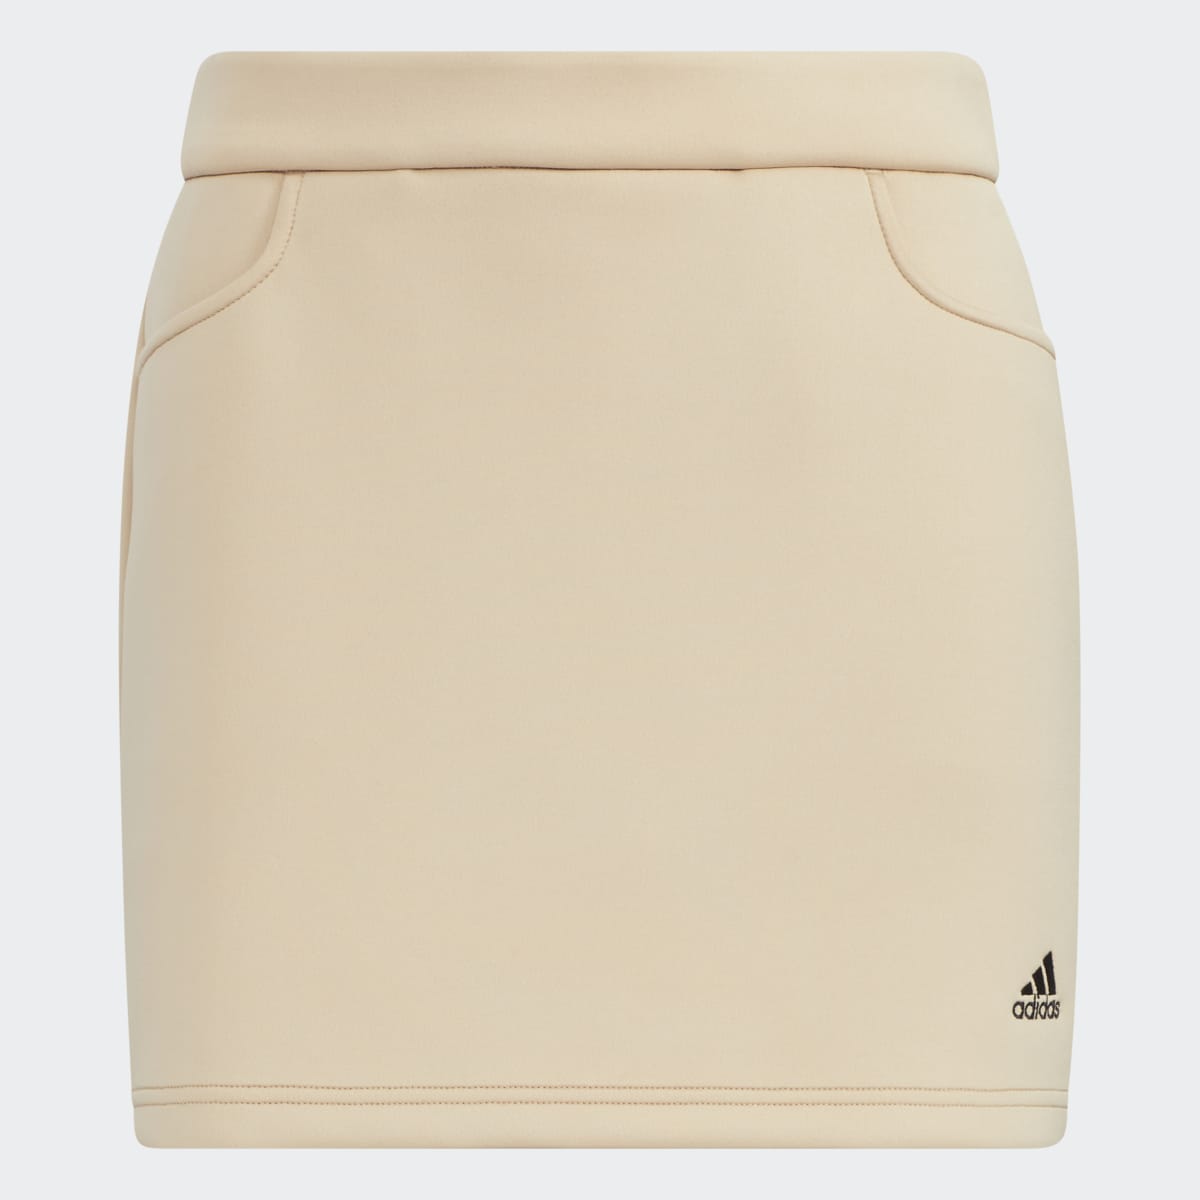 Adidas 3-Bar Skirt. 4